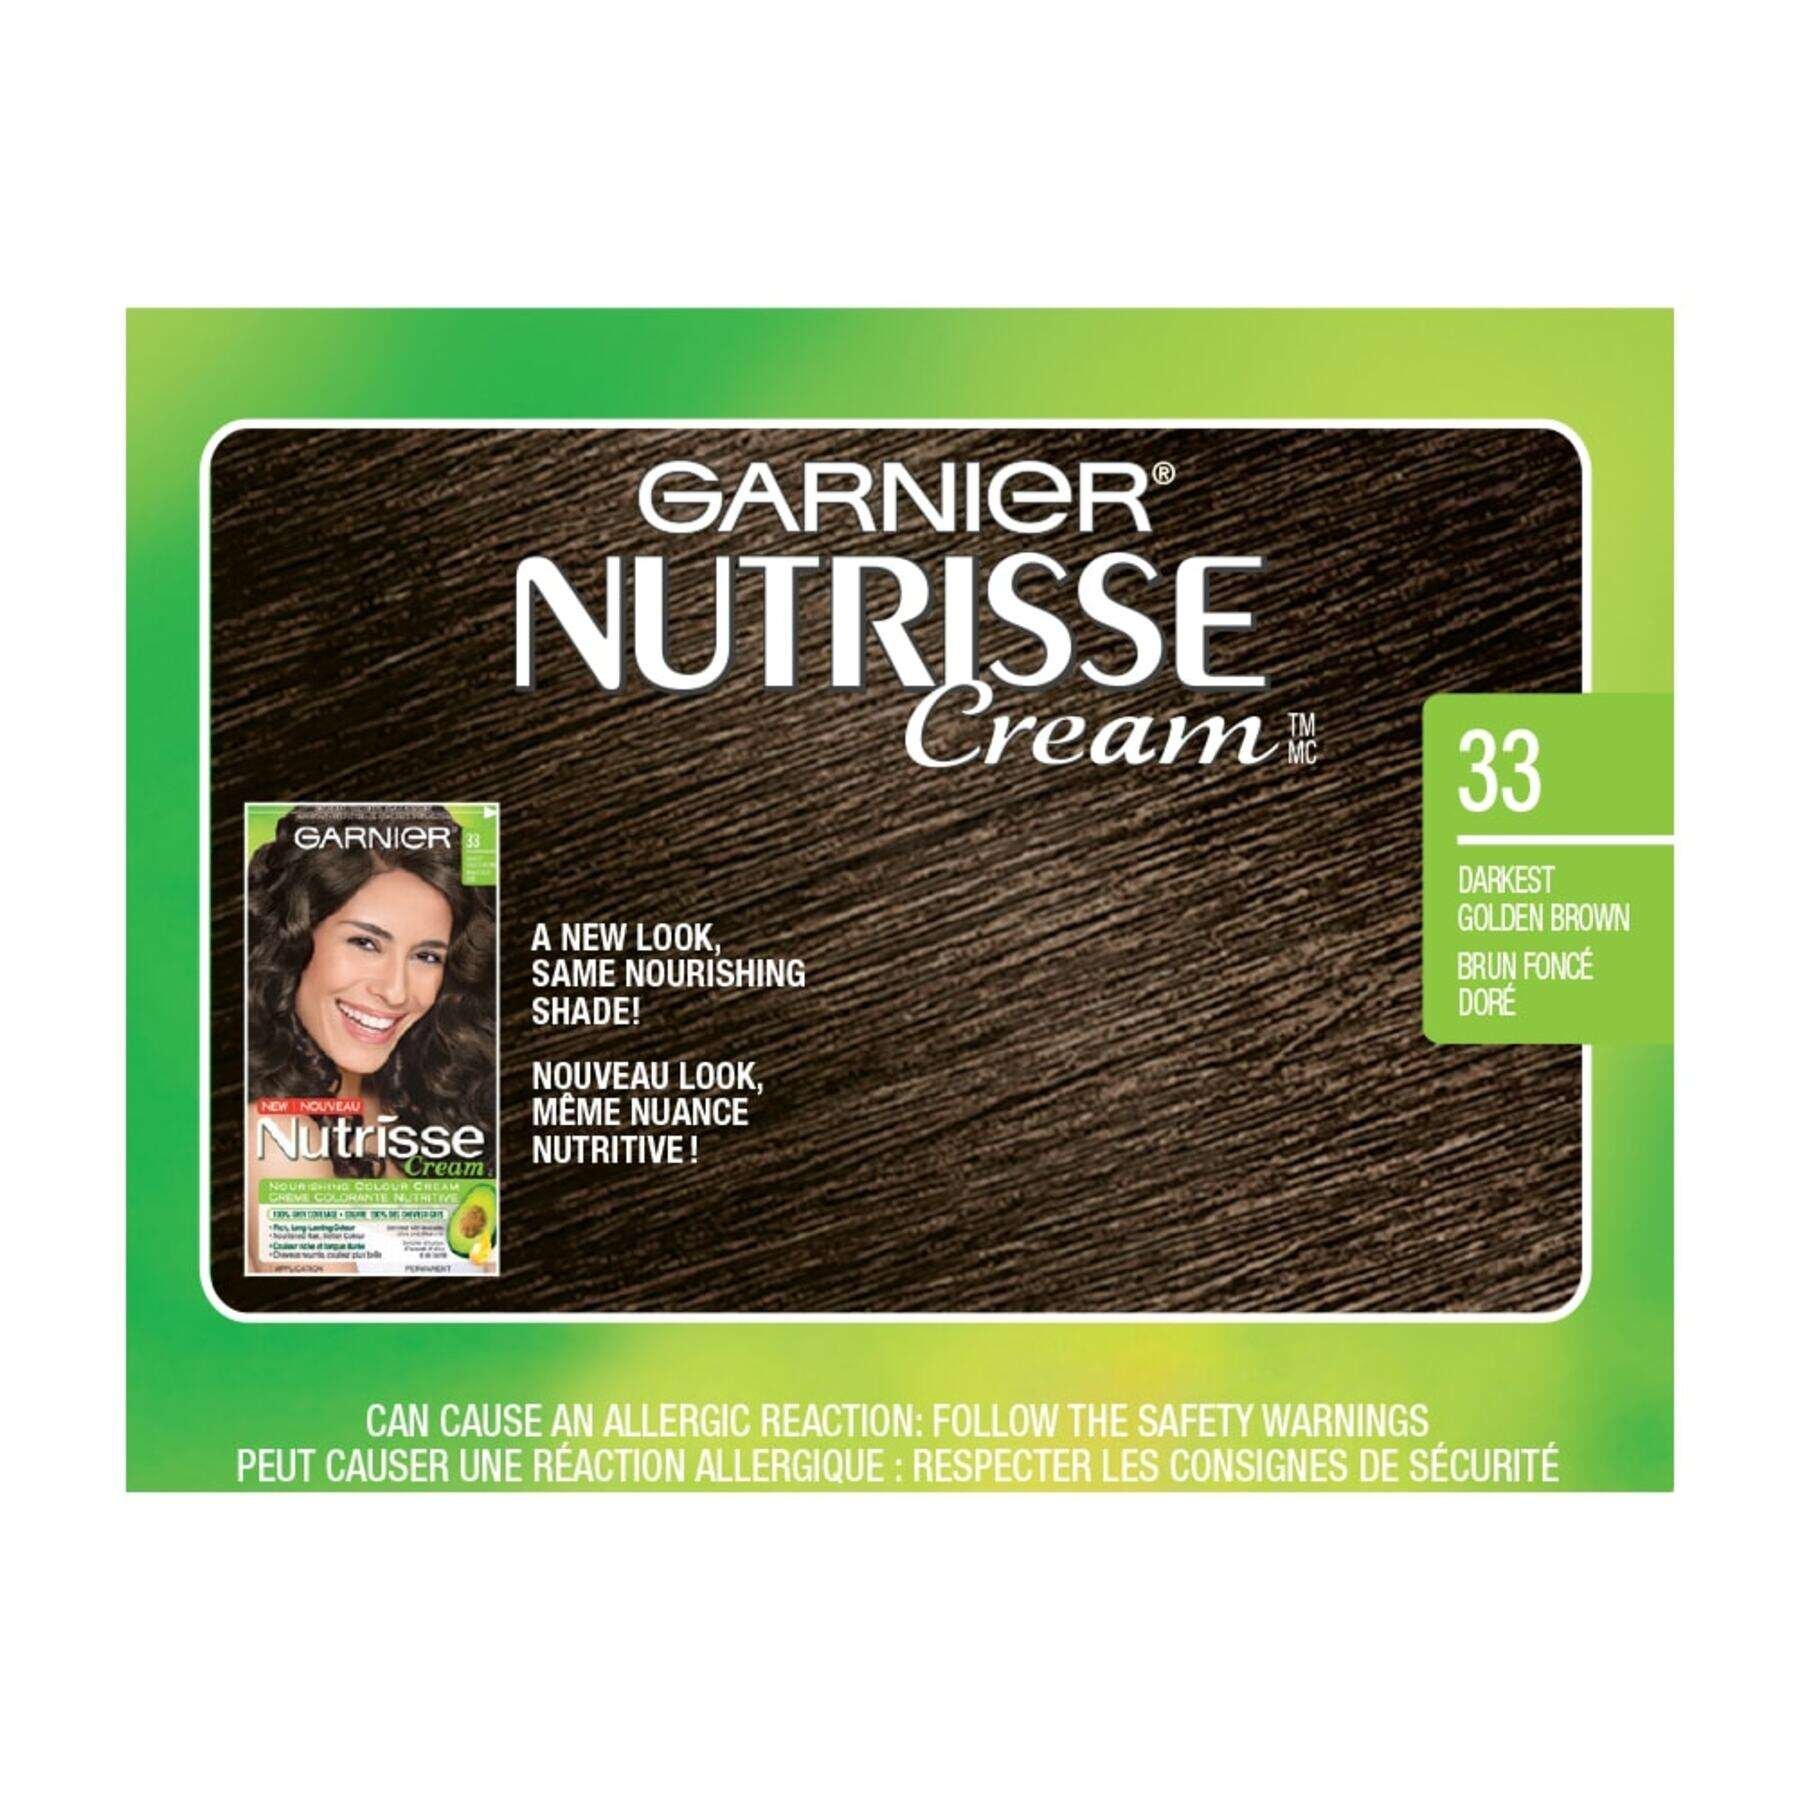 garnier hair dye nutrisse cream 33 darkest golden brown 0603084412341 swatch